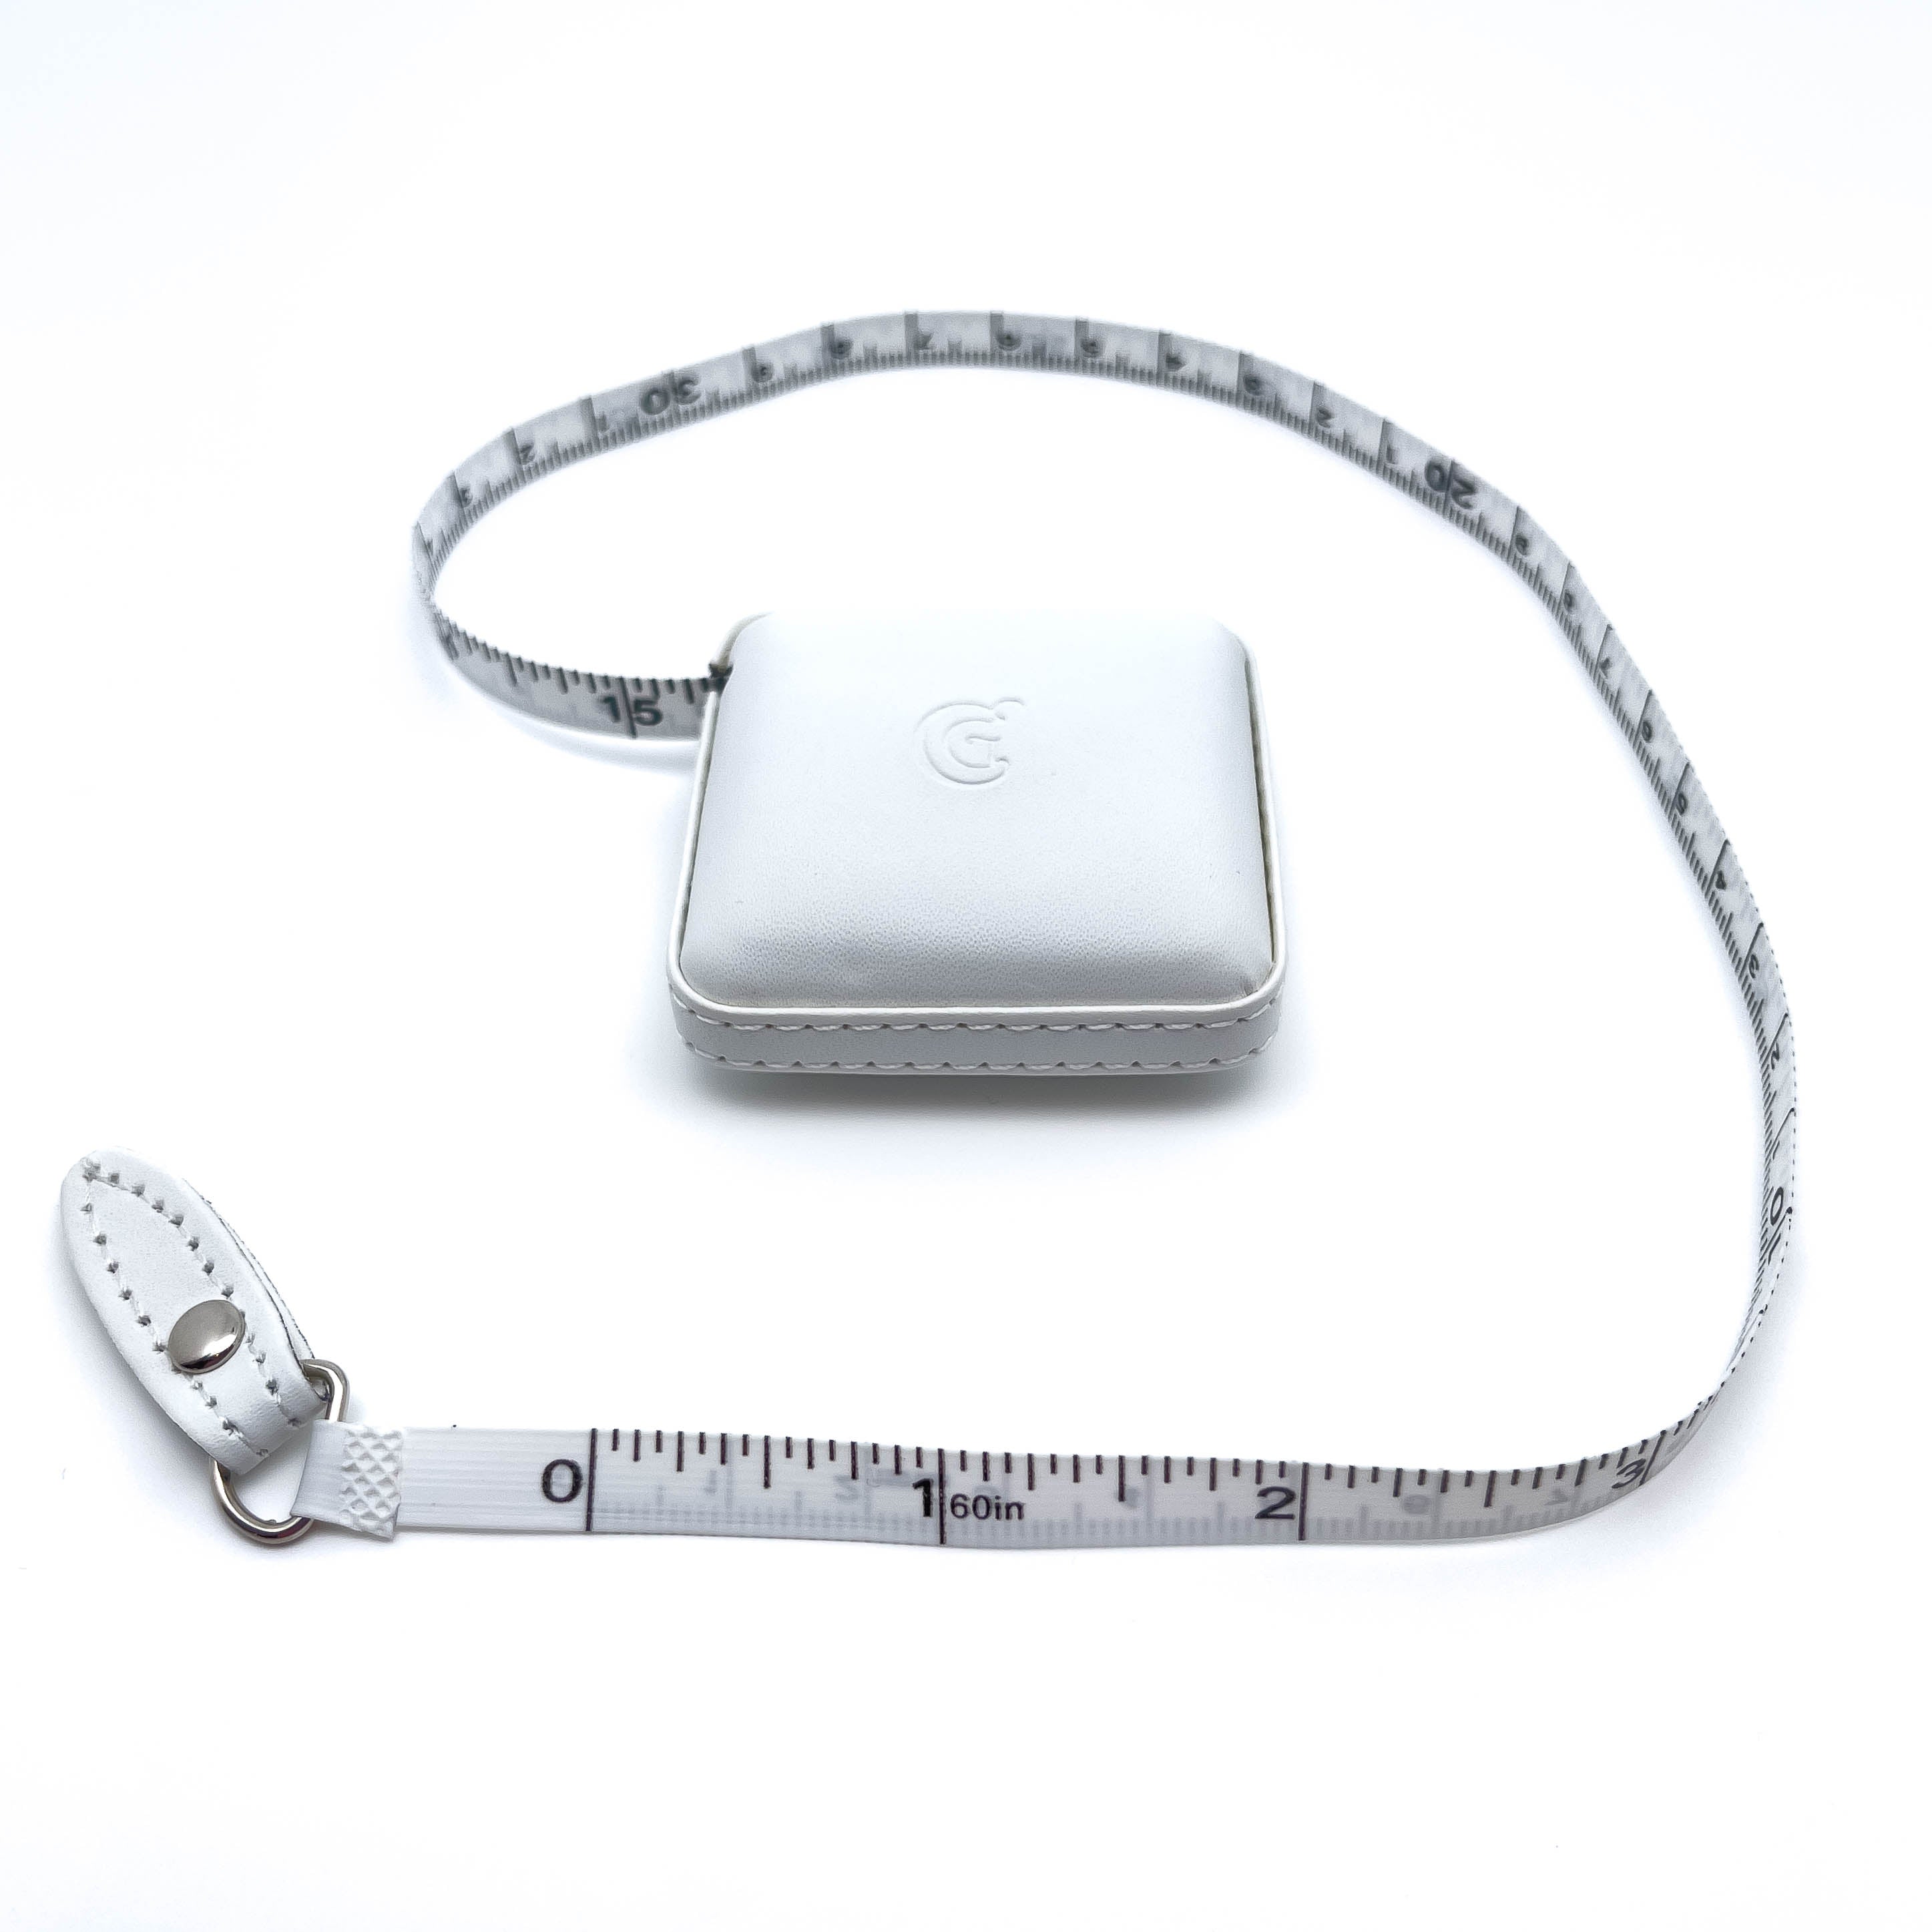 ChiaoGoo White Retractable 60-Inch (150 cm) Tape Measure, 2-Inch Square